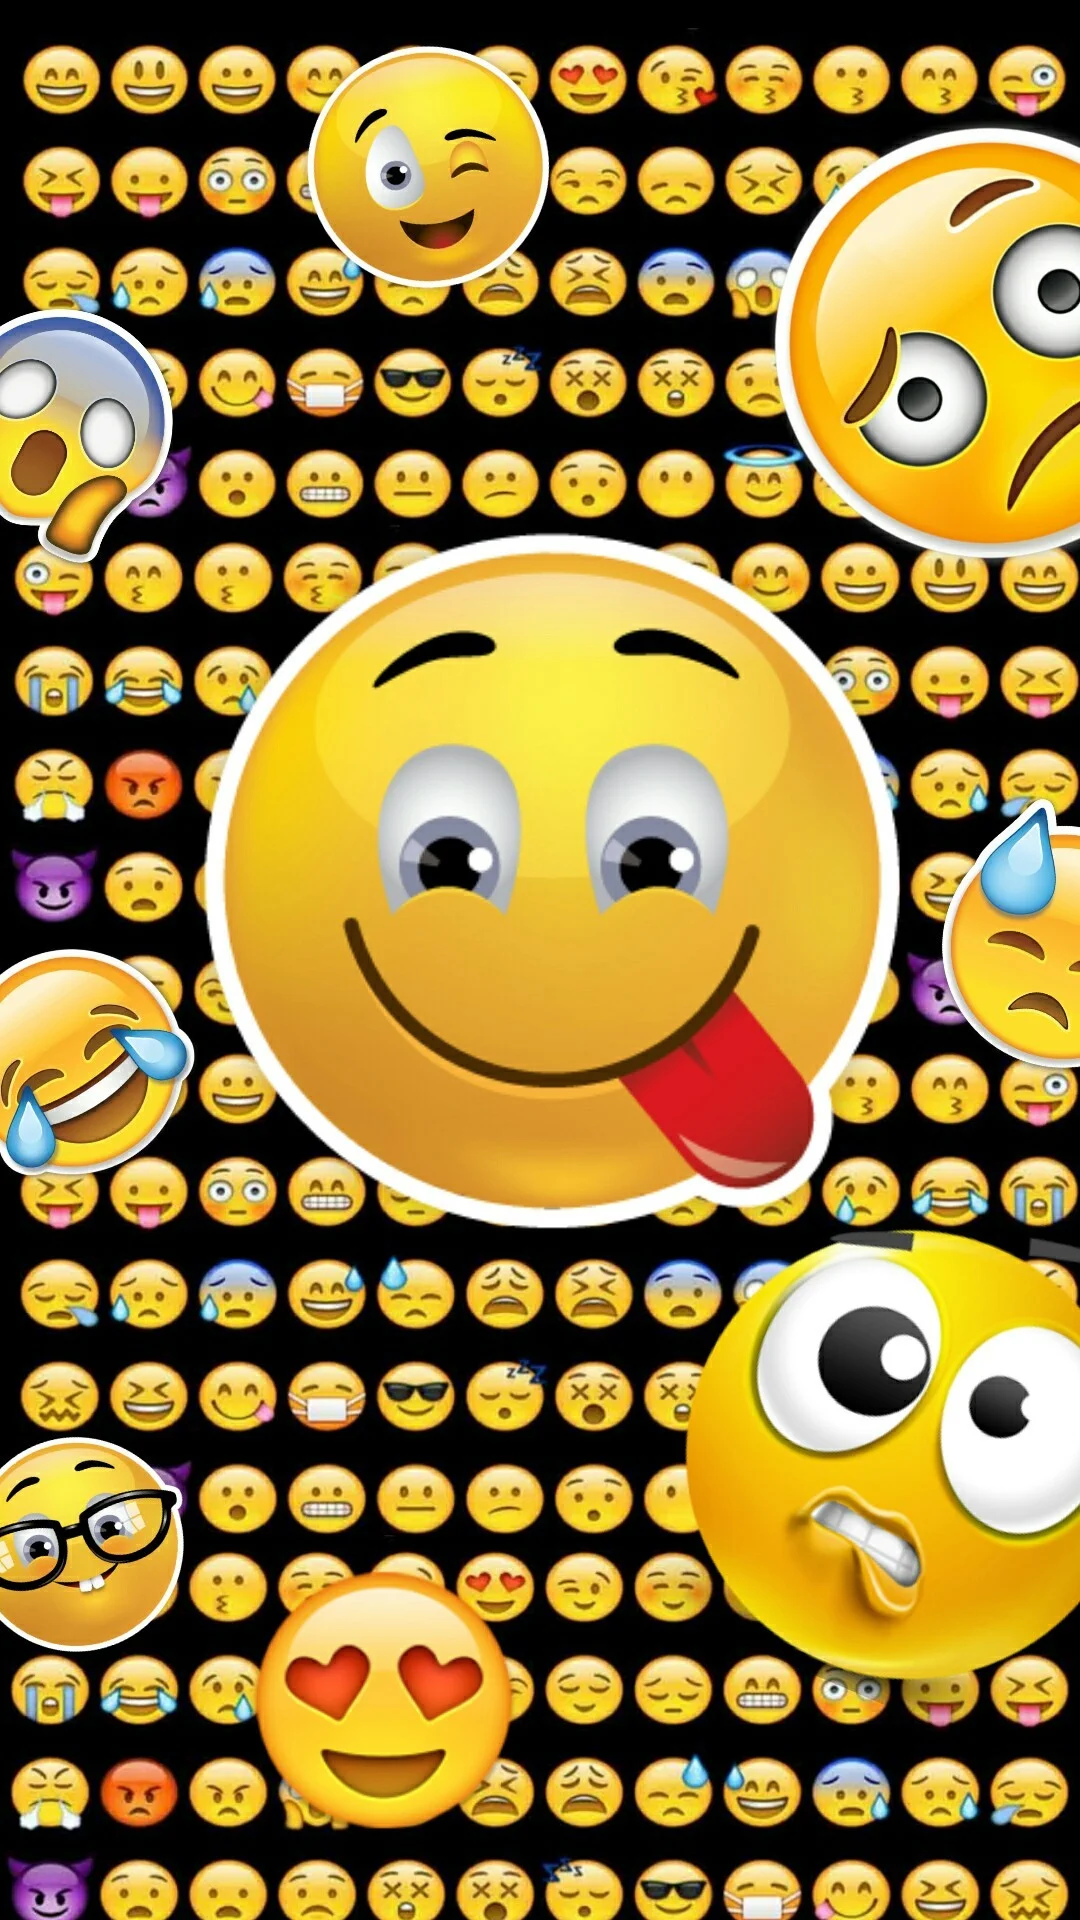 Lustige Hintergrundbilder, Iphone Hintergrundbilder, Emojis, Smileys, Telefone, Girly, Bildschirm, Free Downloads, Cart